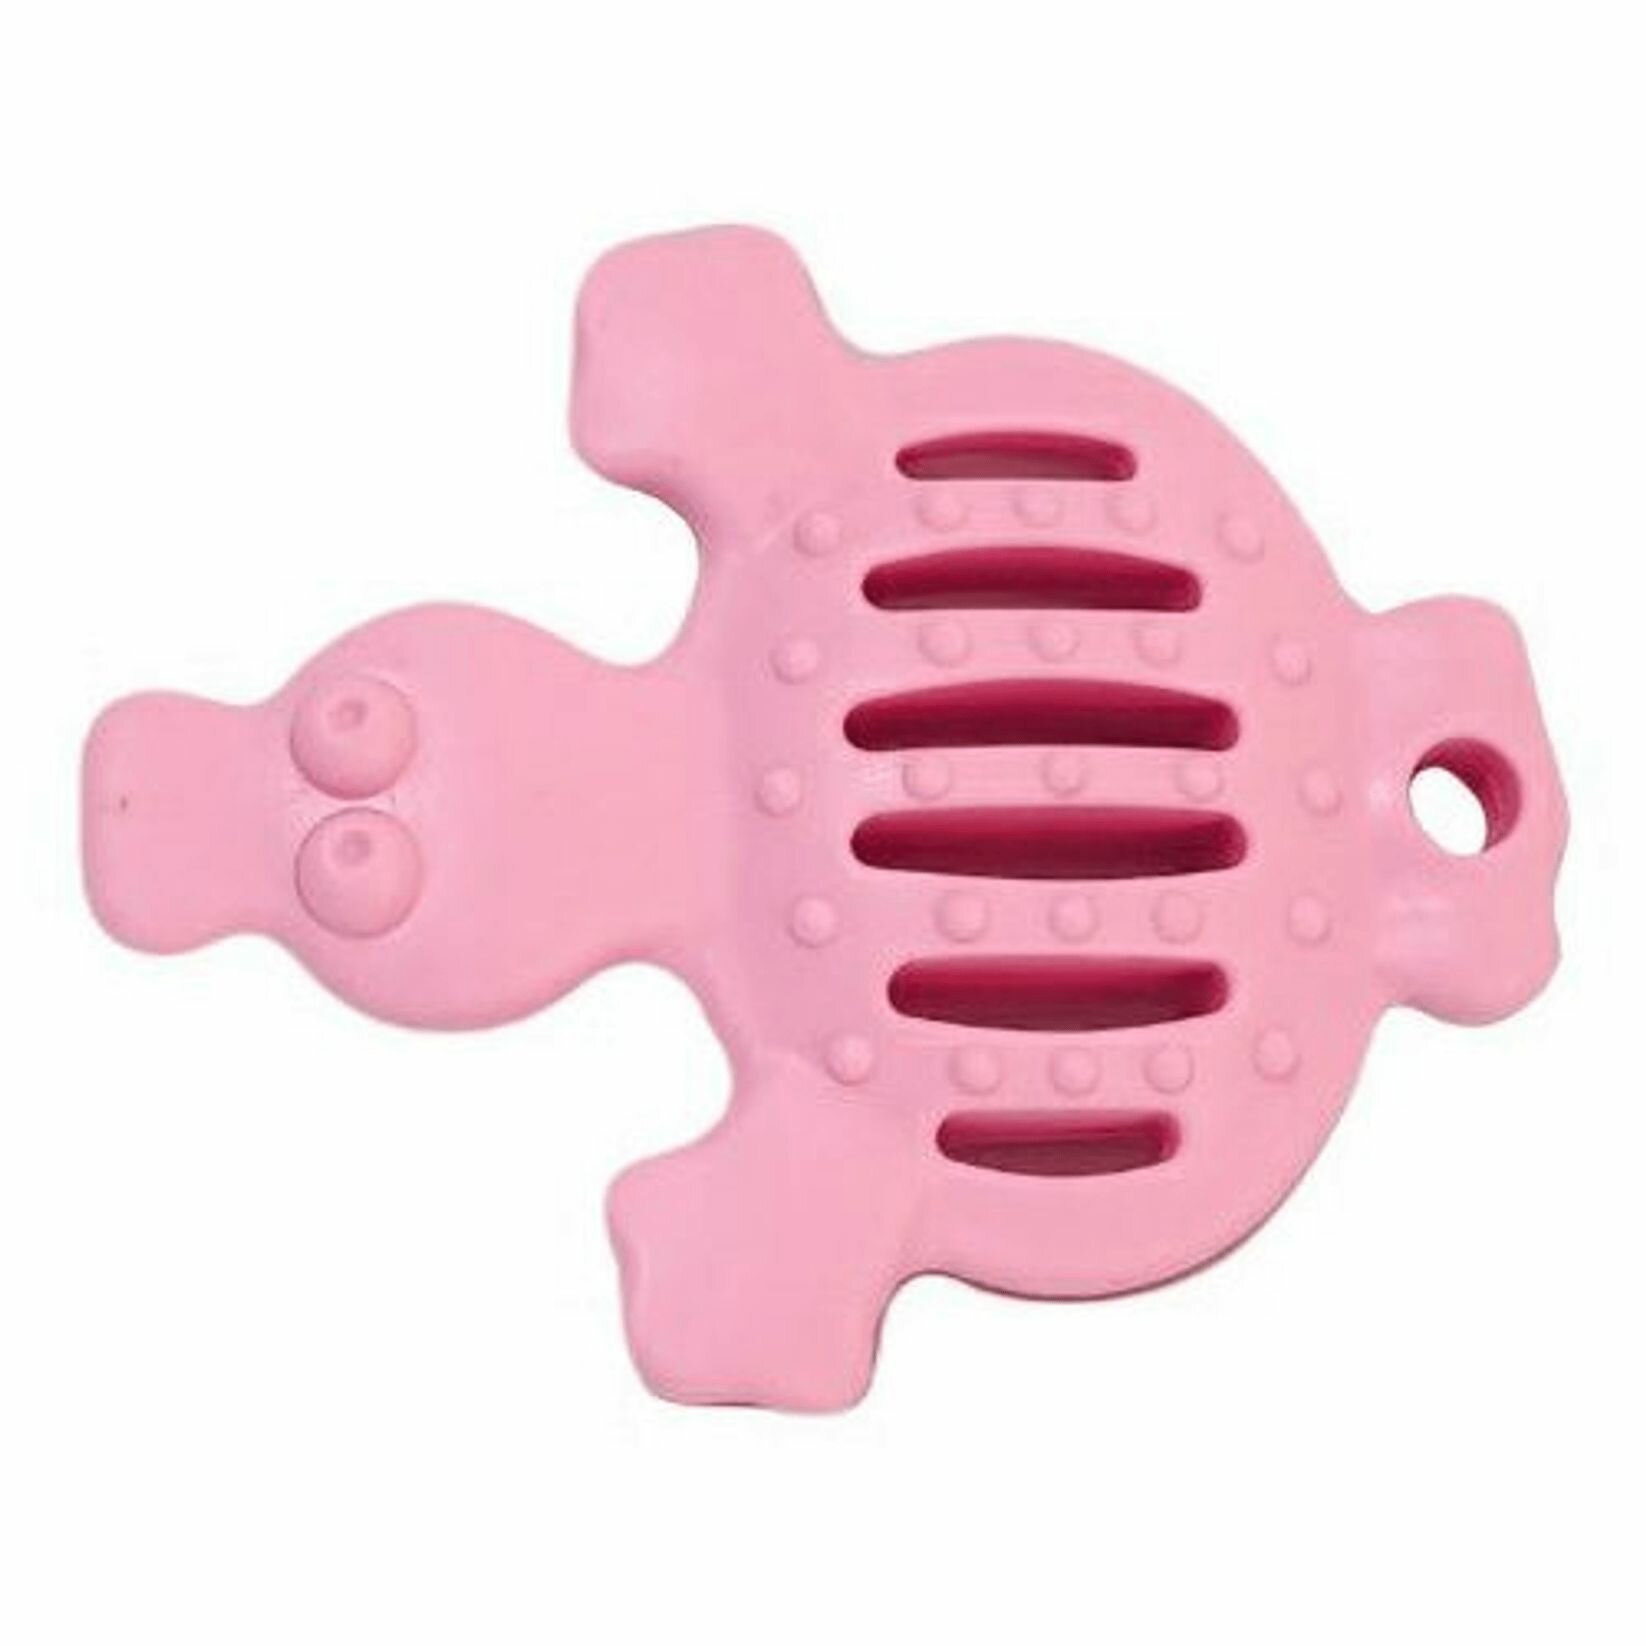 HOMEPET Dental игрушка для собак утка (13,5 см., Розовая) - фото №1